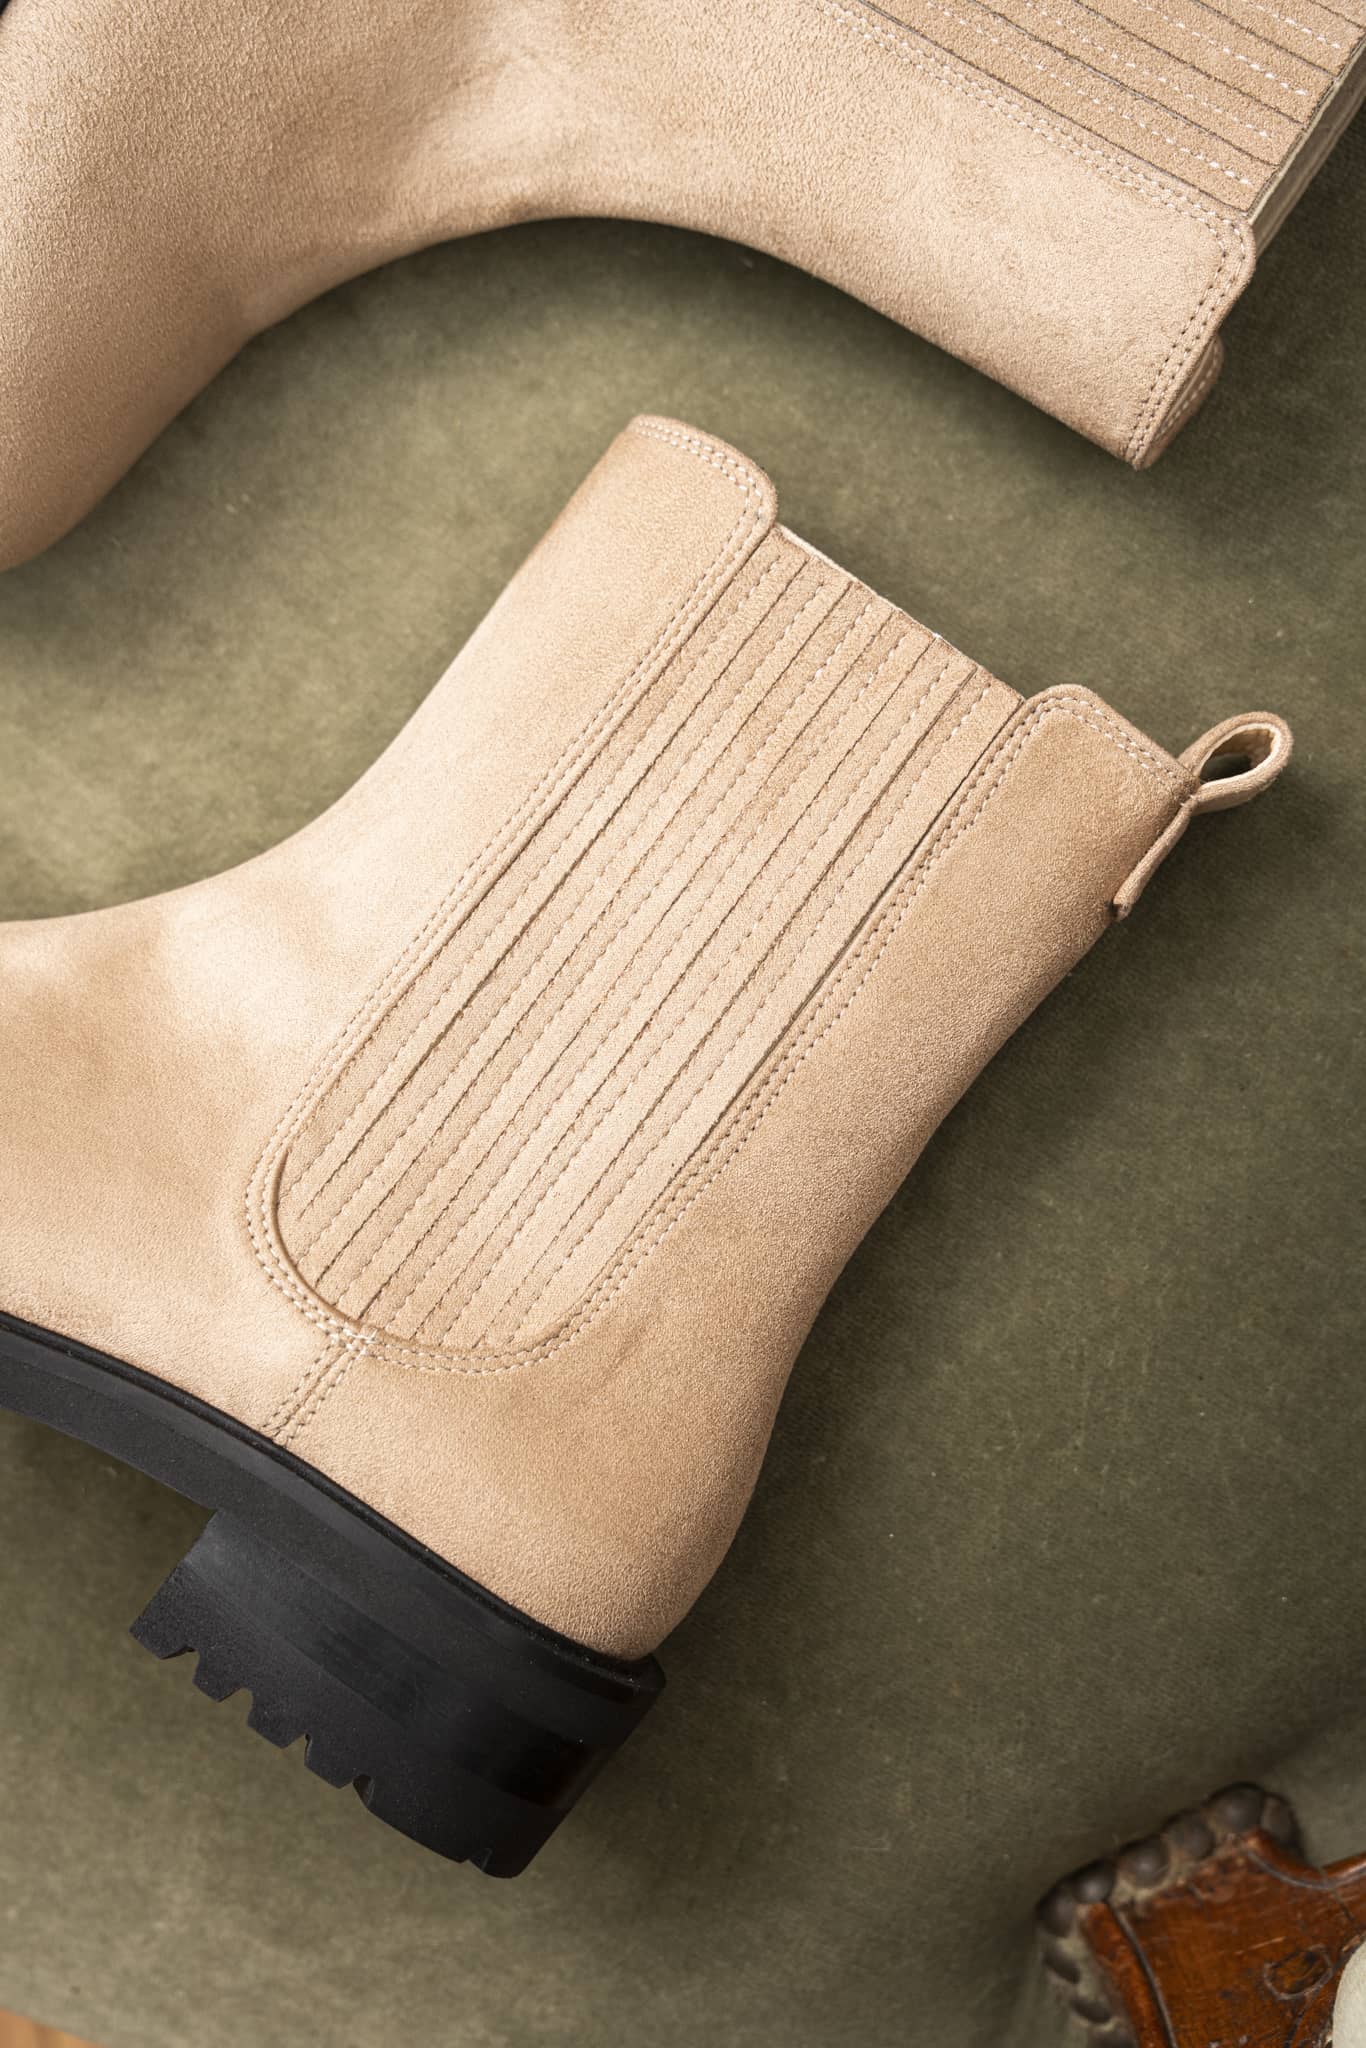 Bottines plates sans cuir beige style chelsea boots femme recyclées Mystique Minuit sur Terre